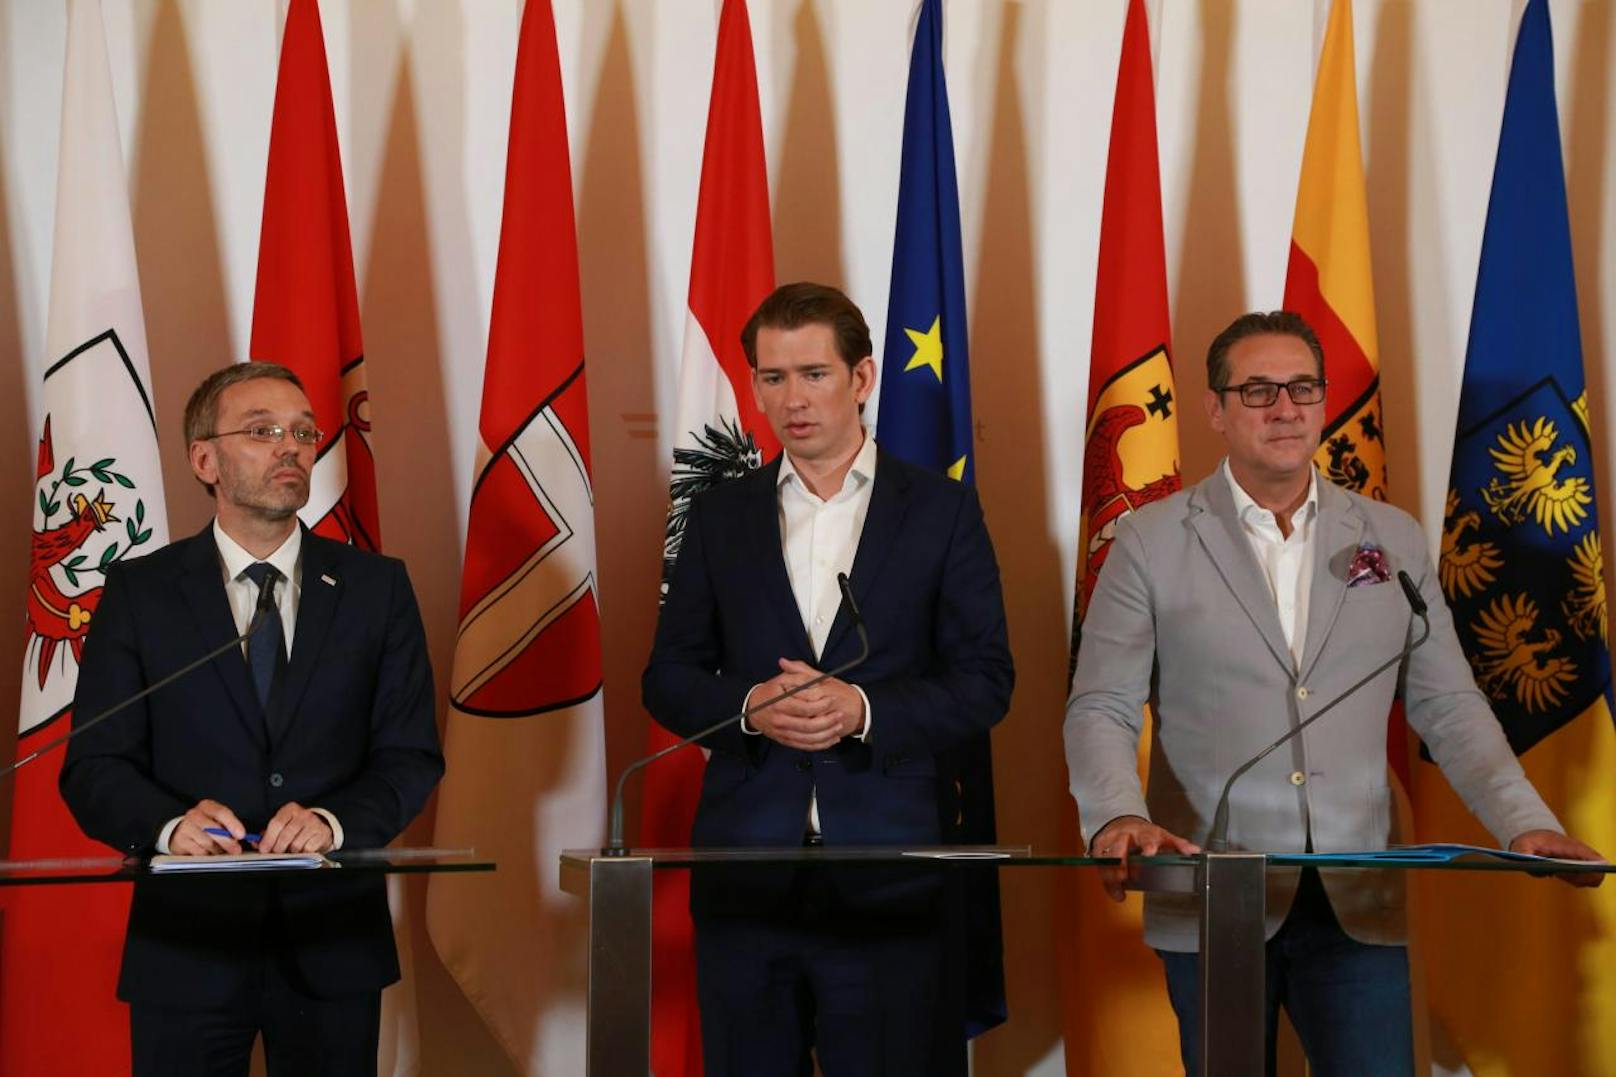 <b>Österreichs</b> Regierung (hier Innenminister Kickl, Kanzler Kurz und Vize Strache) sieht einige Inhalte des Paktes kritisch und kündigte deshalb an, ihn nicht unterzeichnen zu wollen.